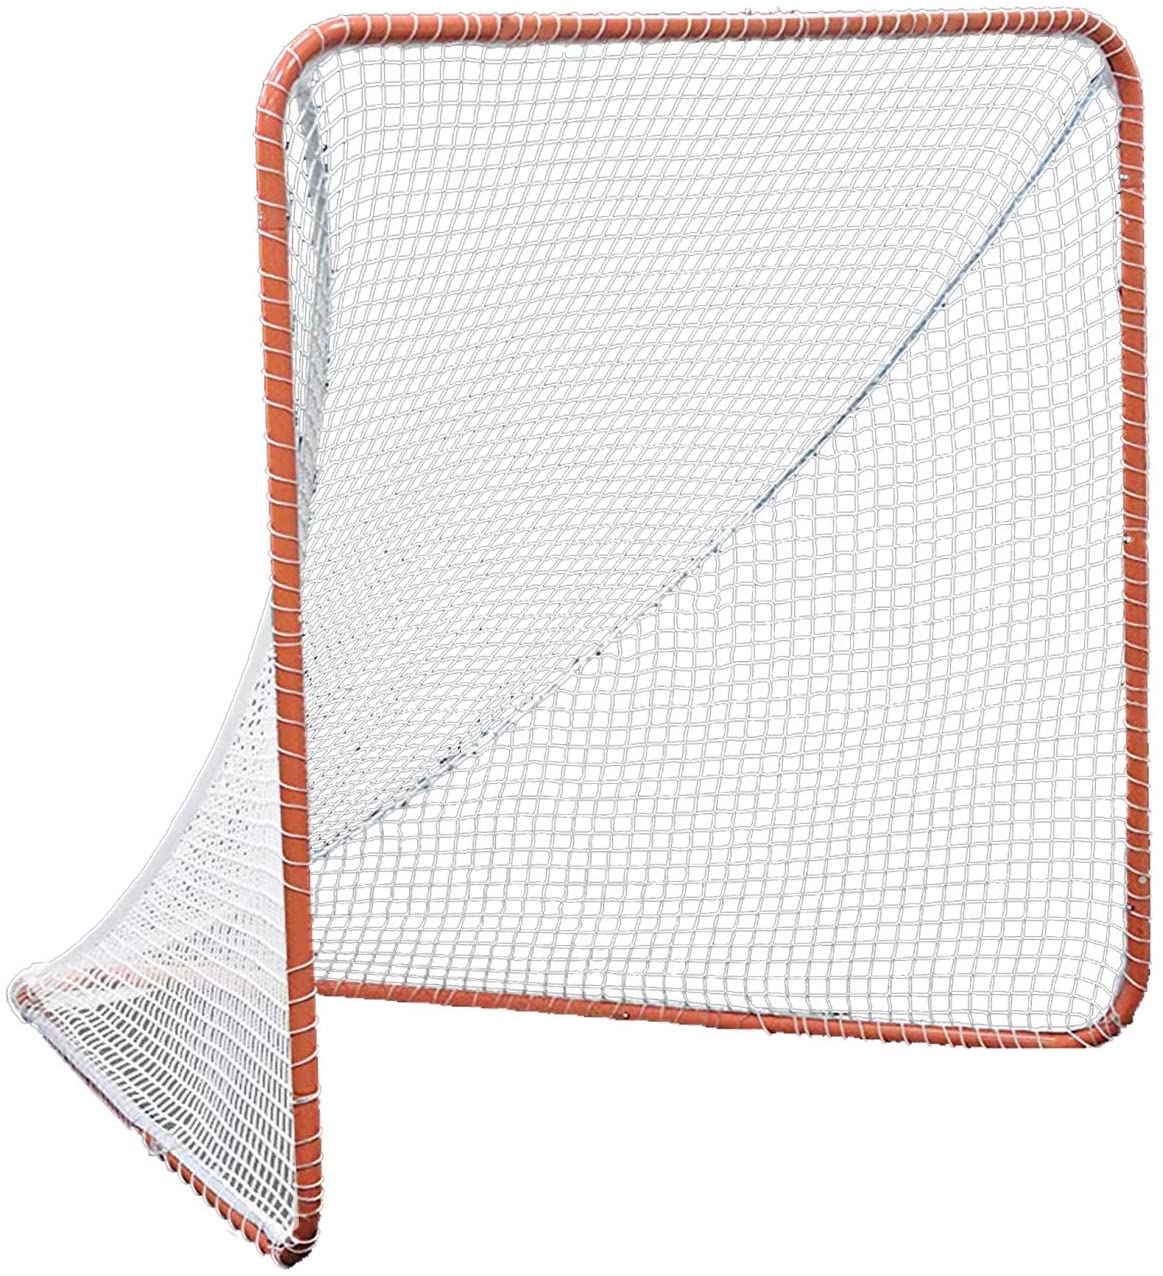 Red de lacrosse con marco de acero Portería de lacrosse portátil Portería de lacrosse universitaria | Tamaño 7'X6'X6'